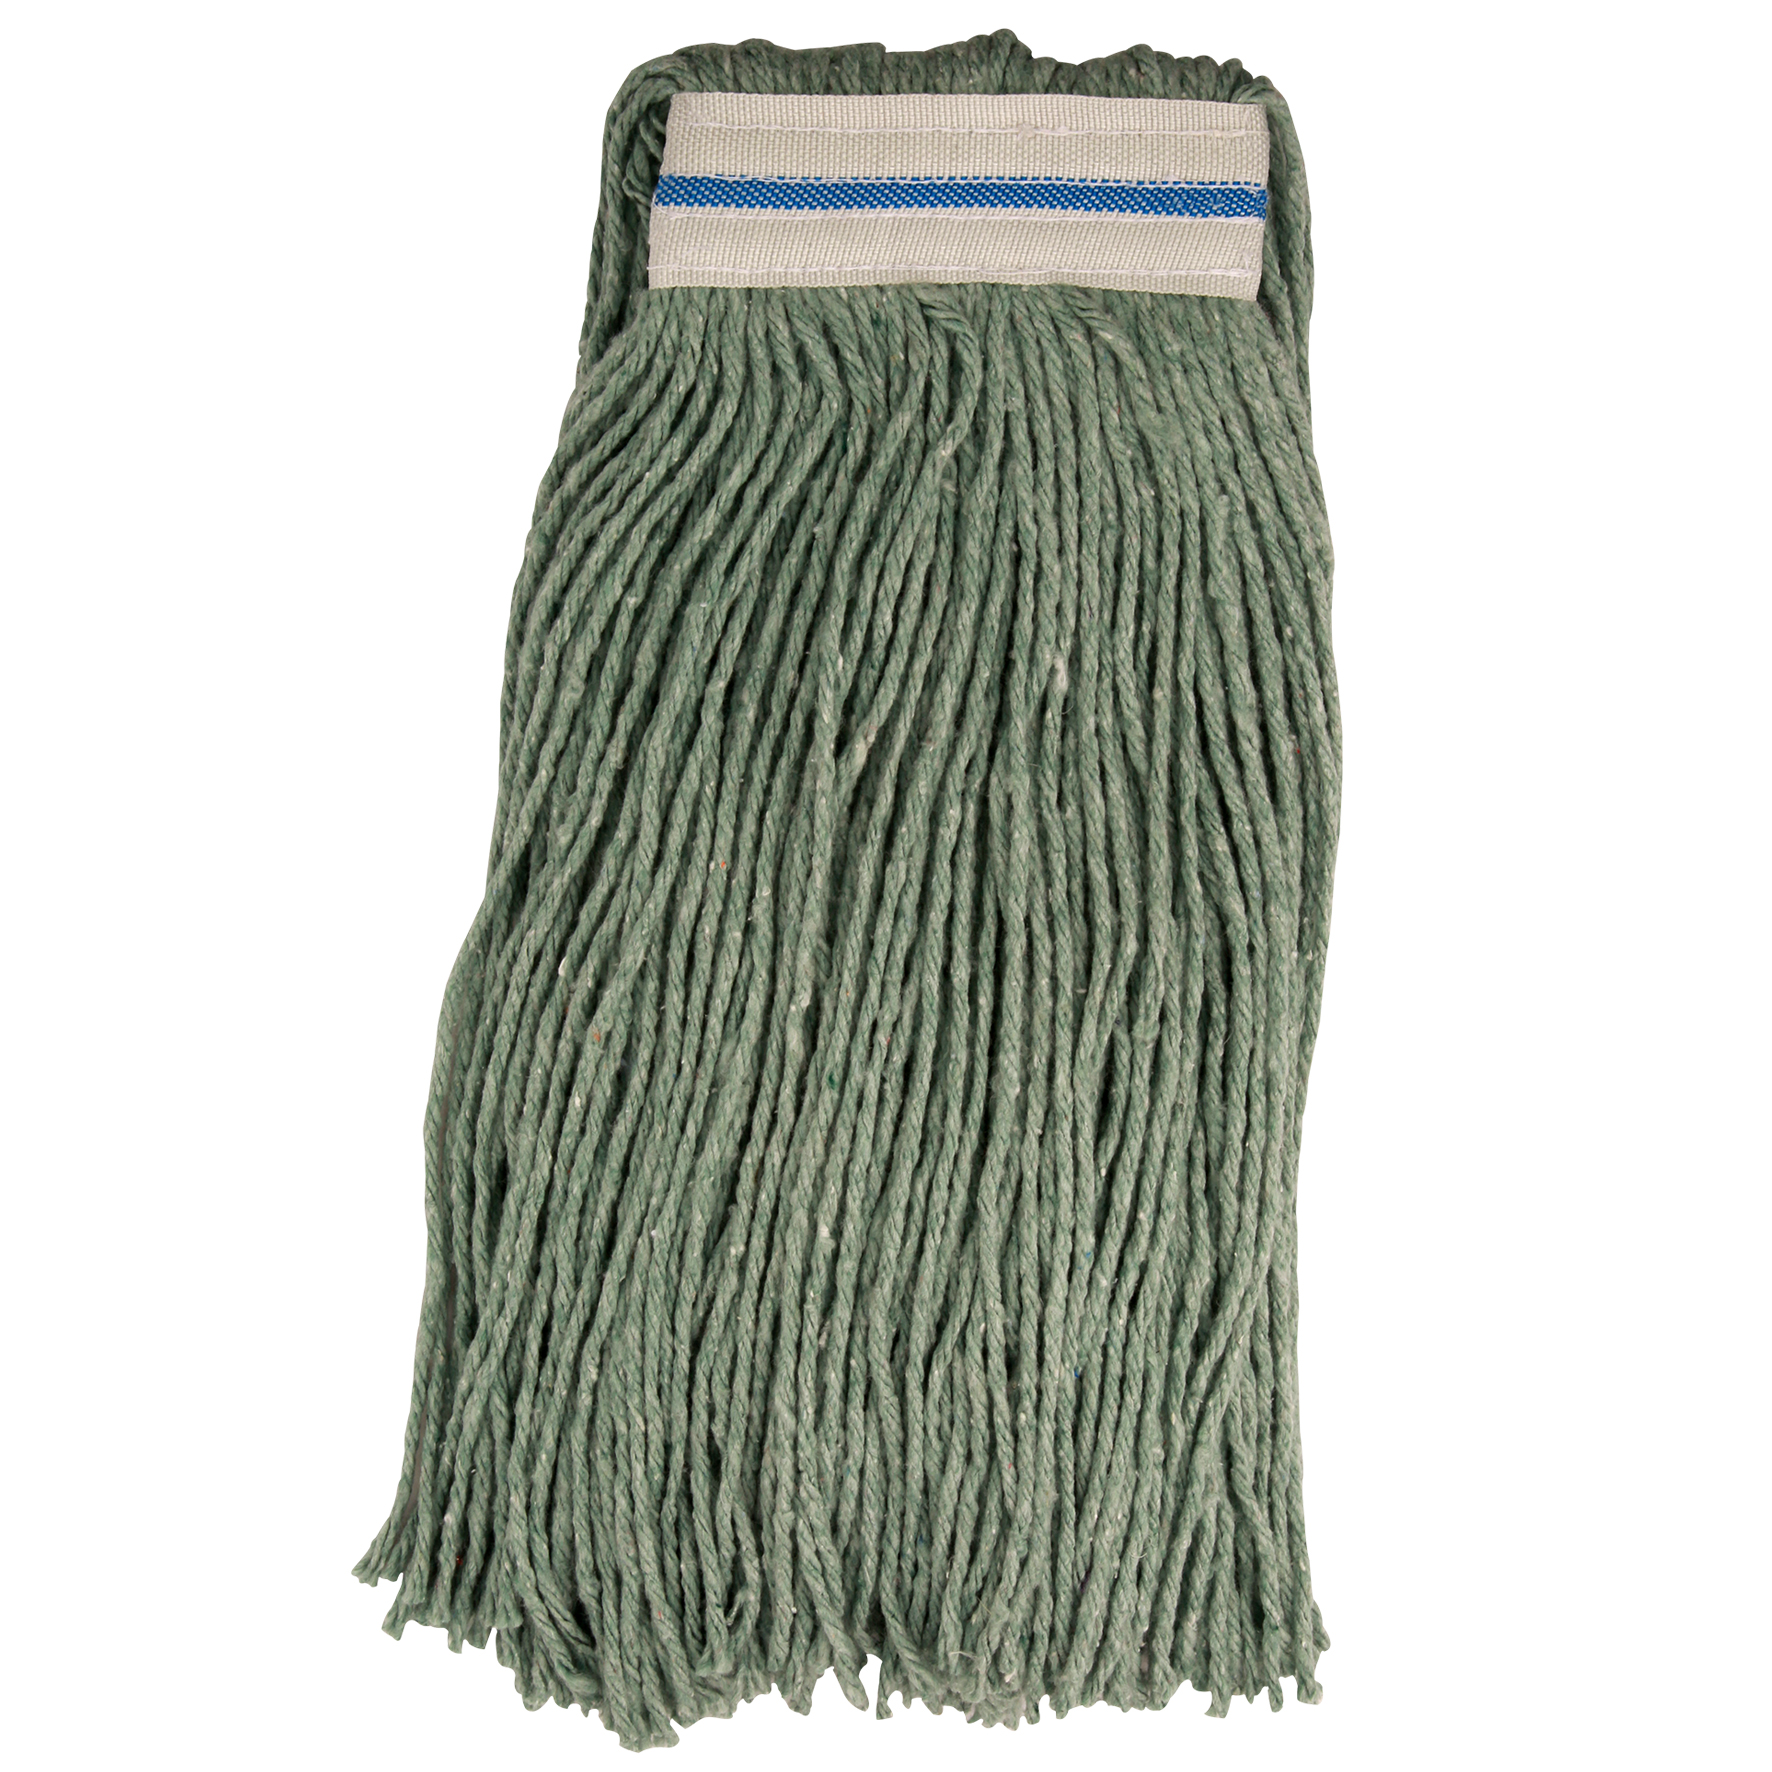 Professional cotton yarn mop «Canada» 400 gr